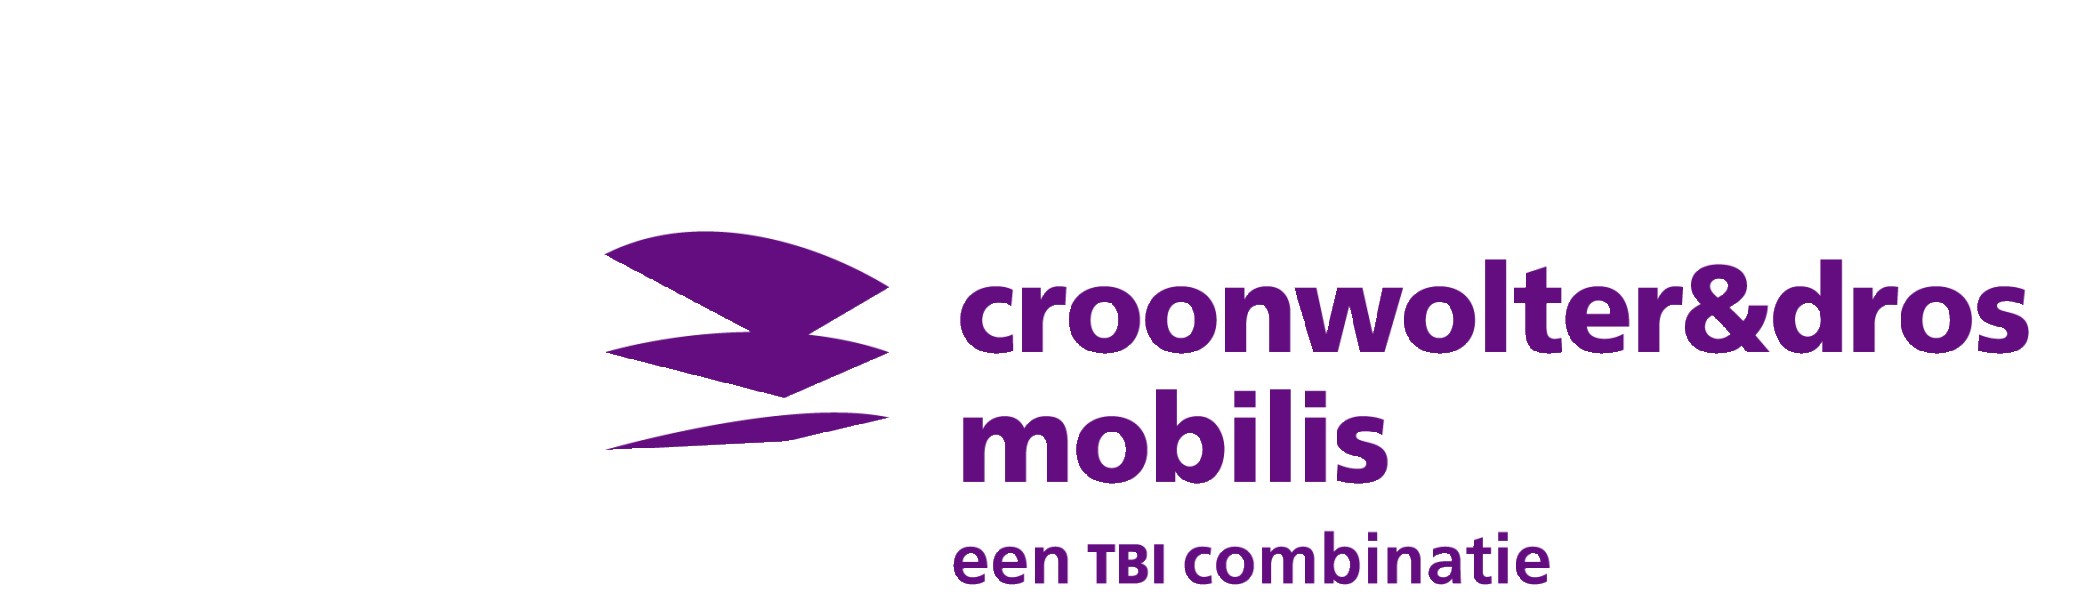 Samenwerking Croonwolter&dros en Mobilis (SC&M)